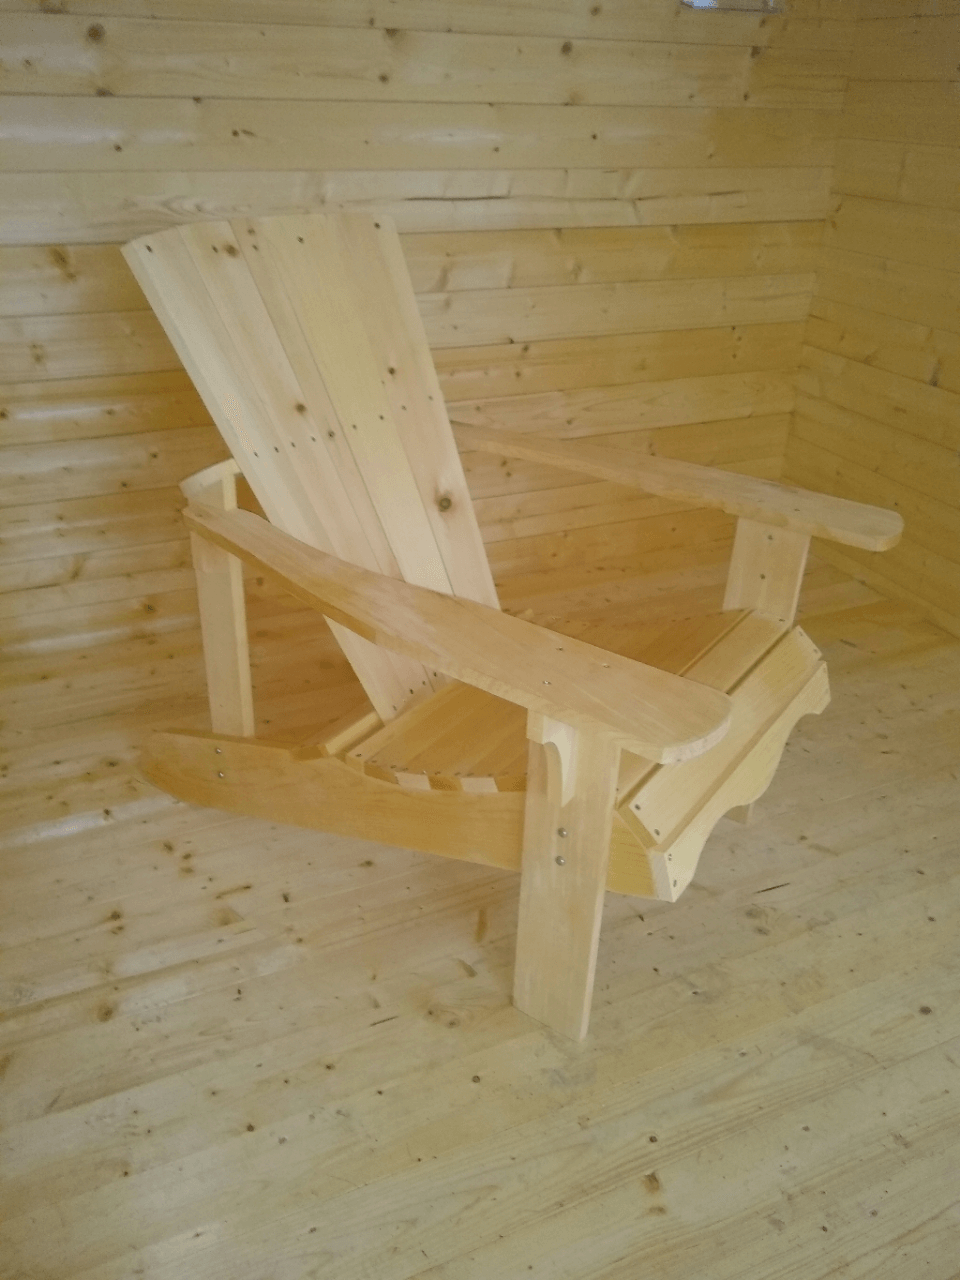 Muskoka chair kit - white pine